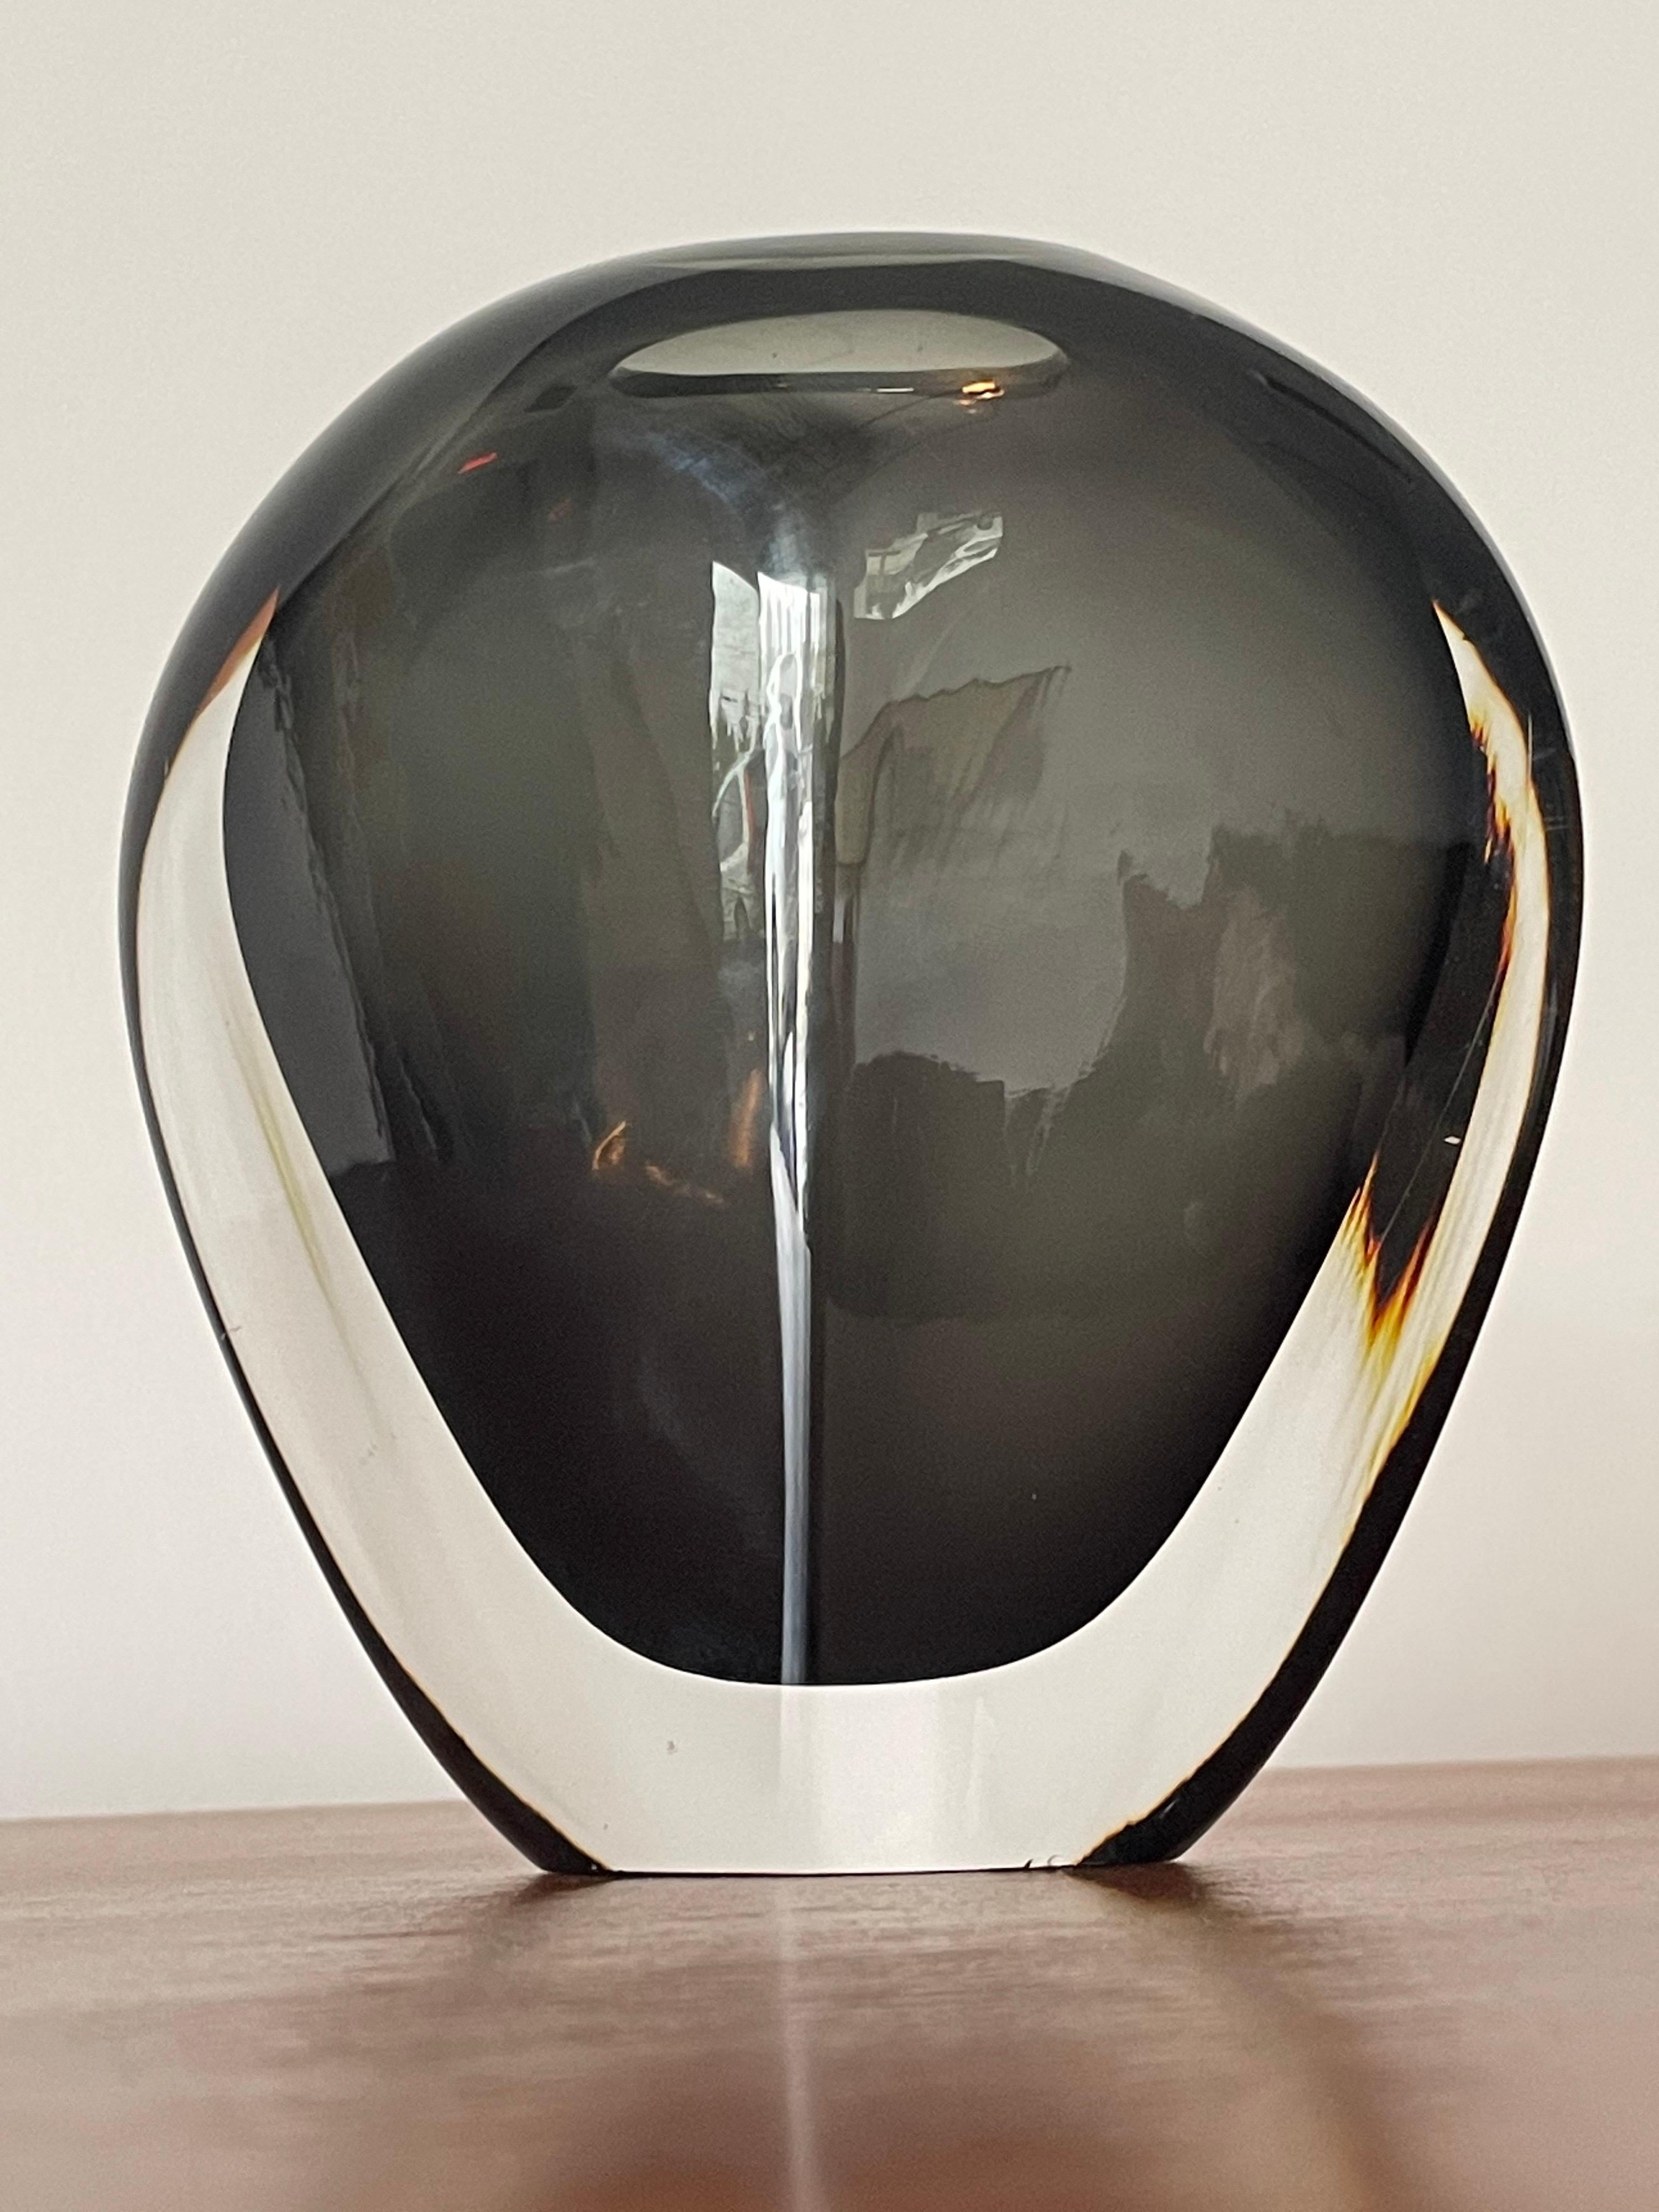 Élégant vase en verre conçu par Nils Landberg pour Orrefors, exécuté selon la technique 